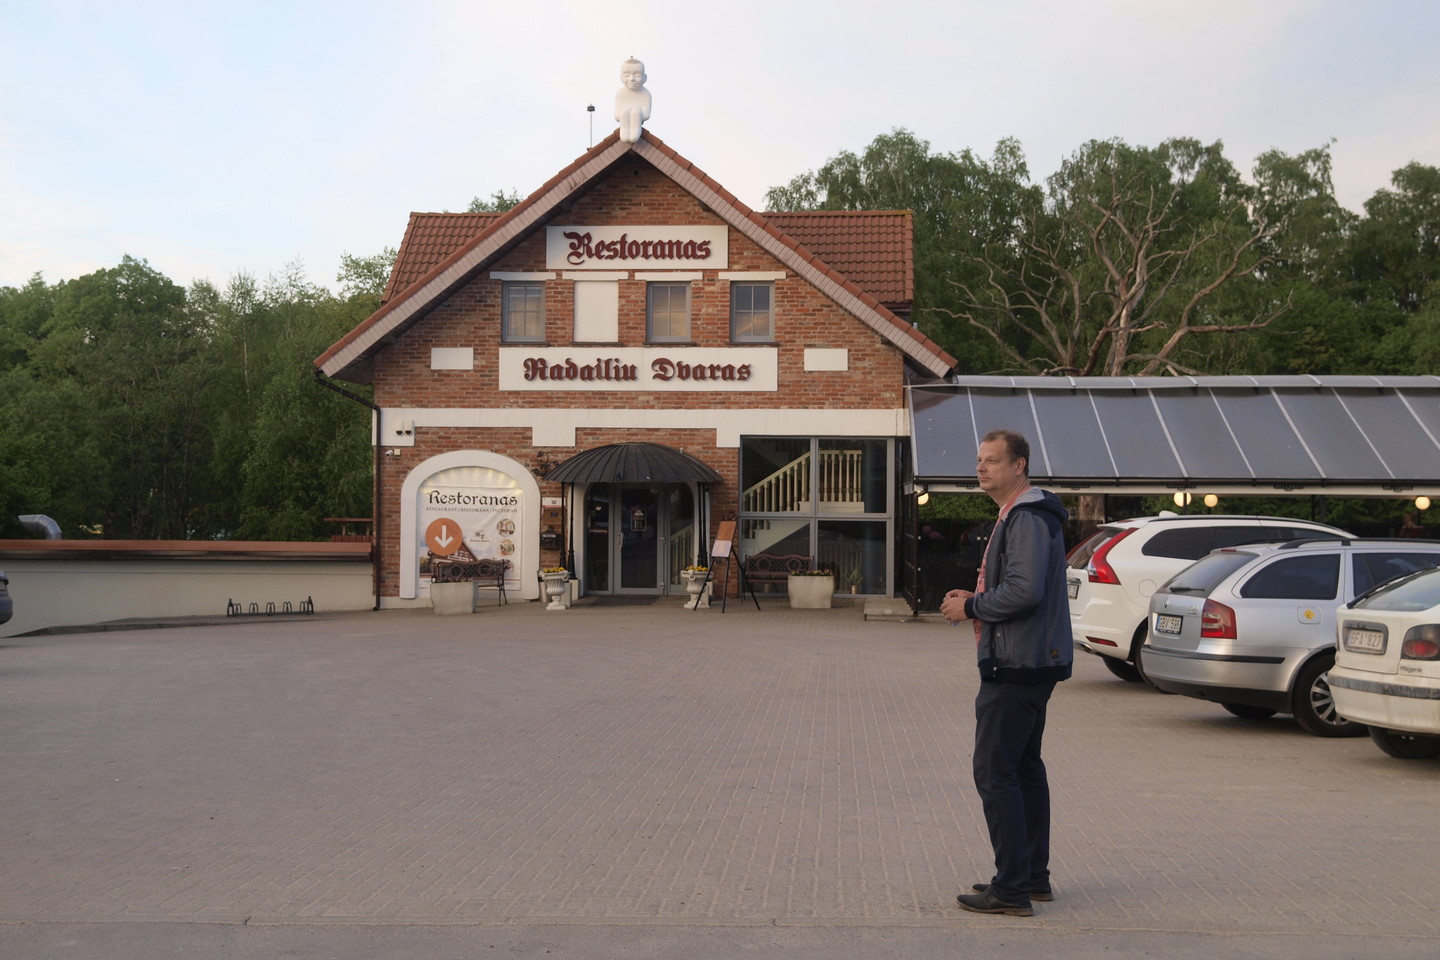 Į Guinesso rekordų knygą pretenduojantis pastatas, pernai spalį duris lankytojams atvėręs Klaipėdos rajone, Radailiuose, yra didžiausias Europoje ir vienintelis Baltijos šalyse apverstas namas. <br>A.Srėbalienės nuotr. 